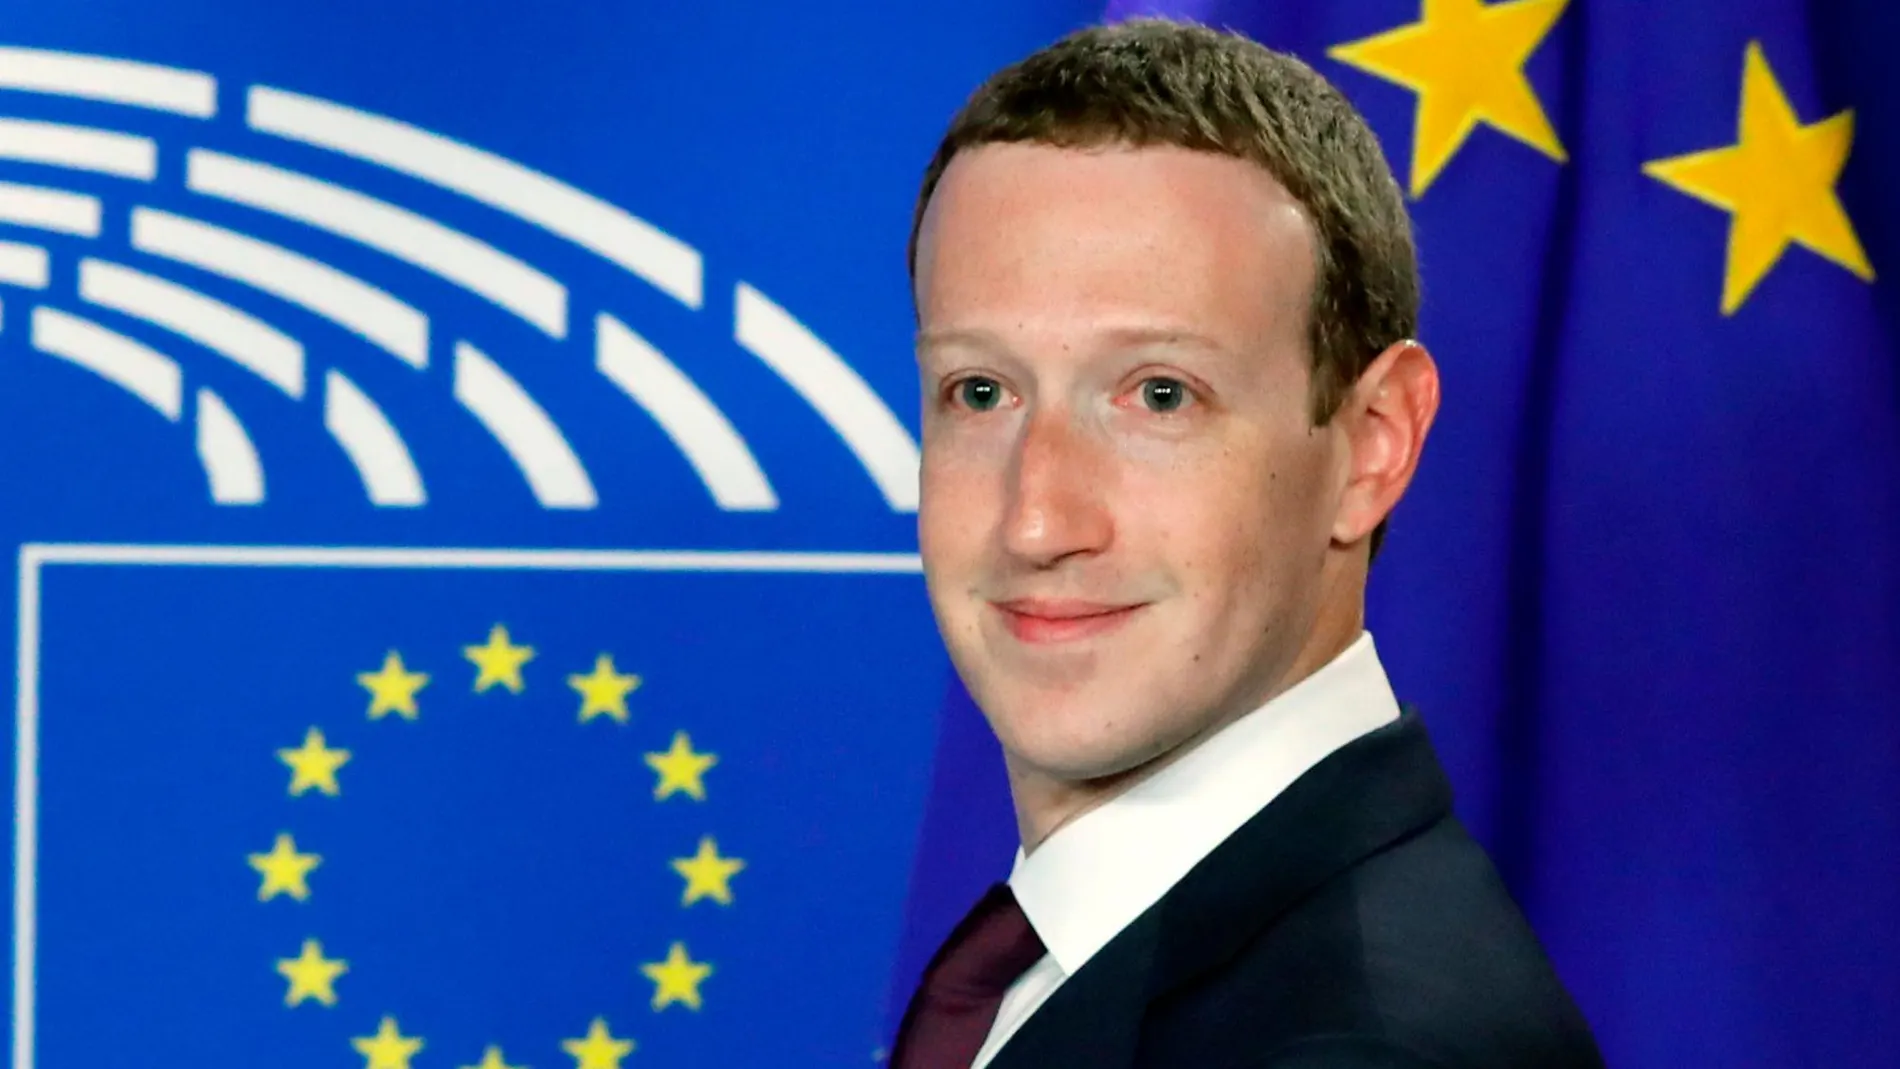 Mark Zuckemberg, CEO de Facebook, en una imagen tomada en el Parlamento Europeo para dar explicaciones sobre la política de privacidad de su empresa, Facebook